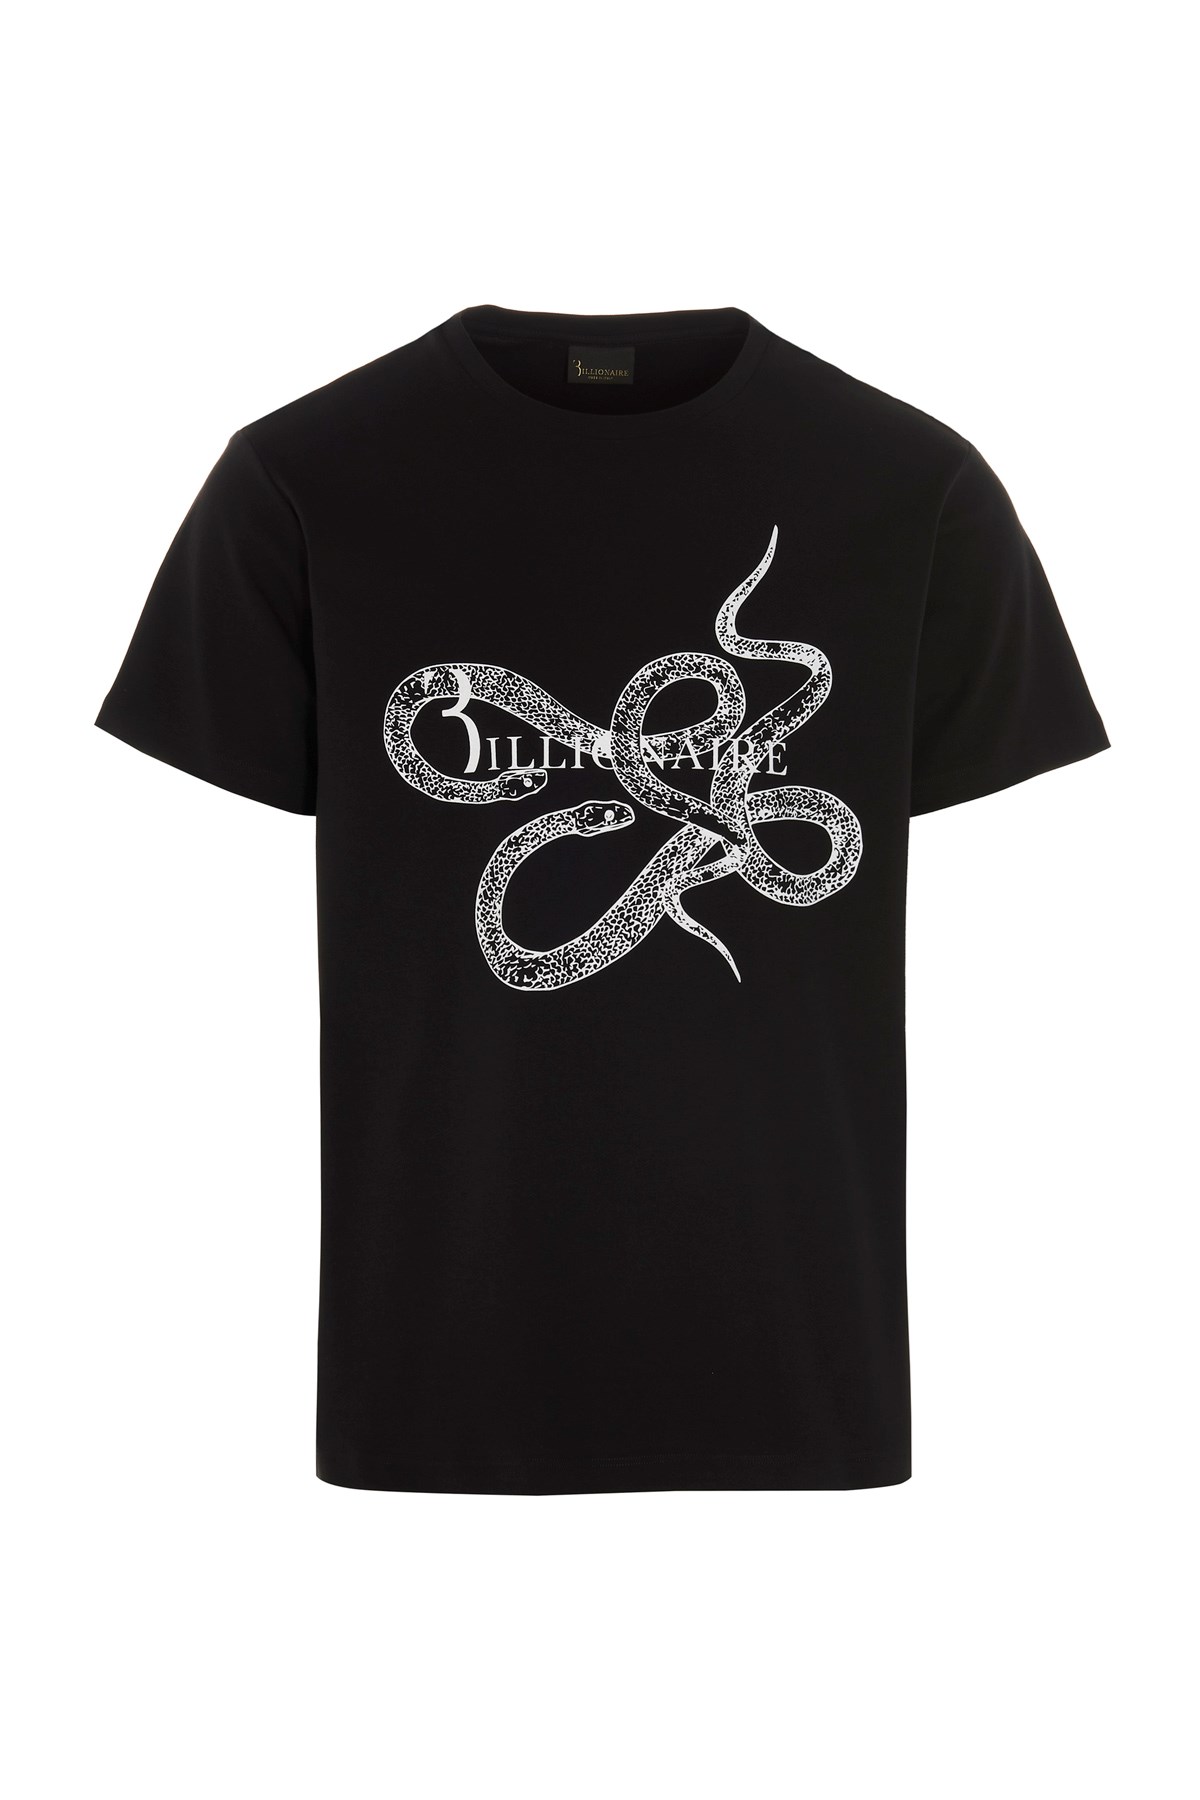 BILLIONAIRE Logo Snake T-Shirt